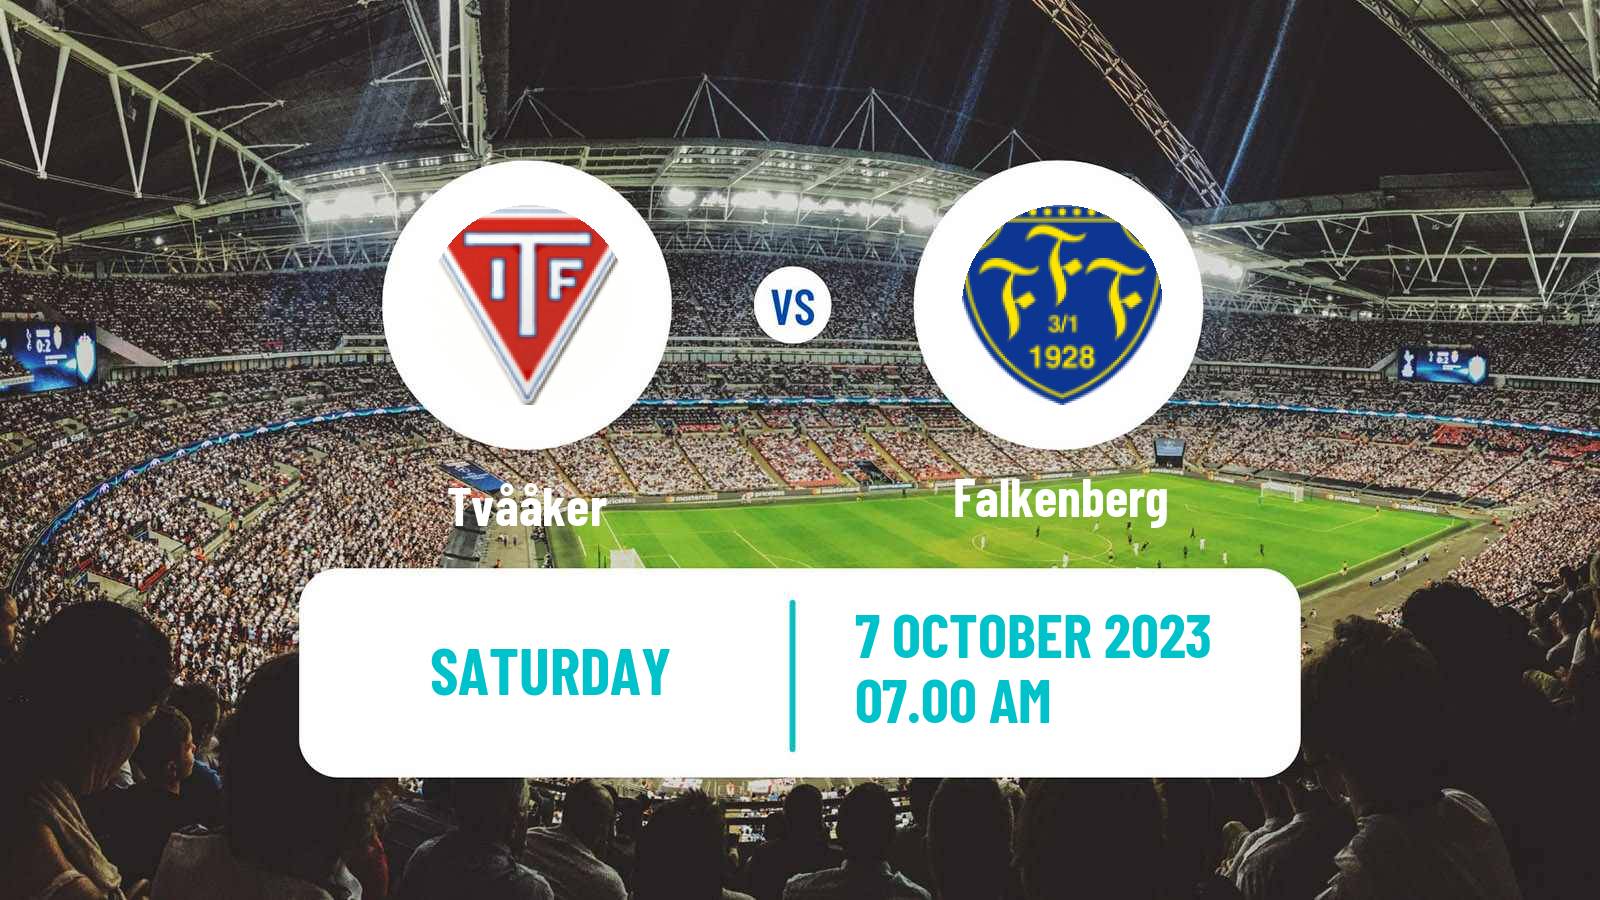 Soccer Swedish Division 1 Södra Tvååker - Falkenberg